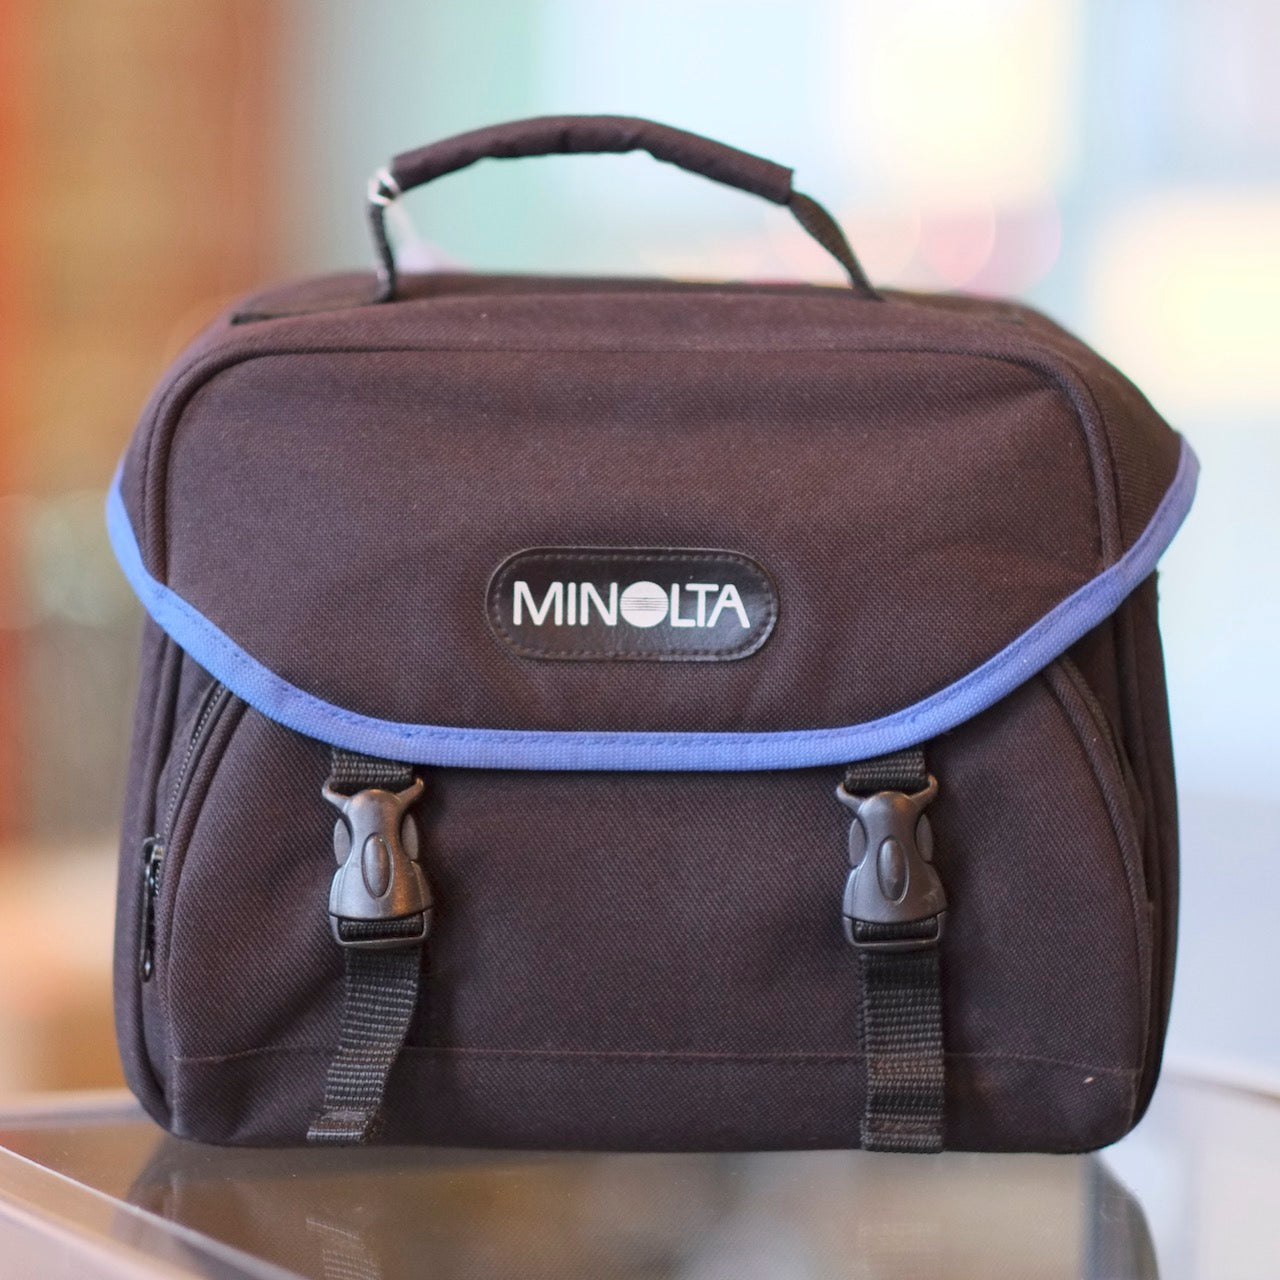 Minolta camera bag